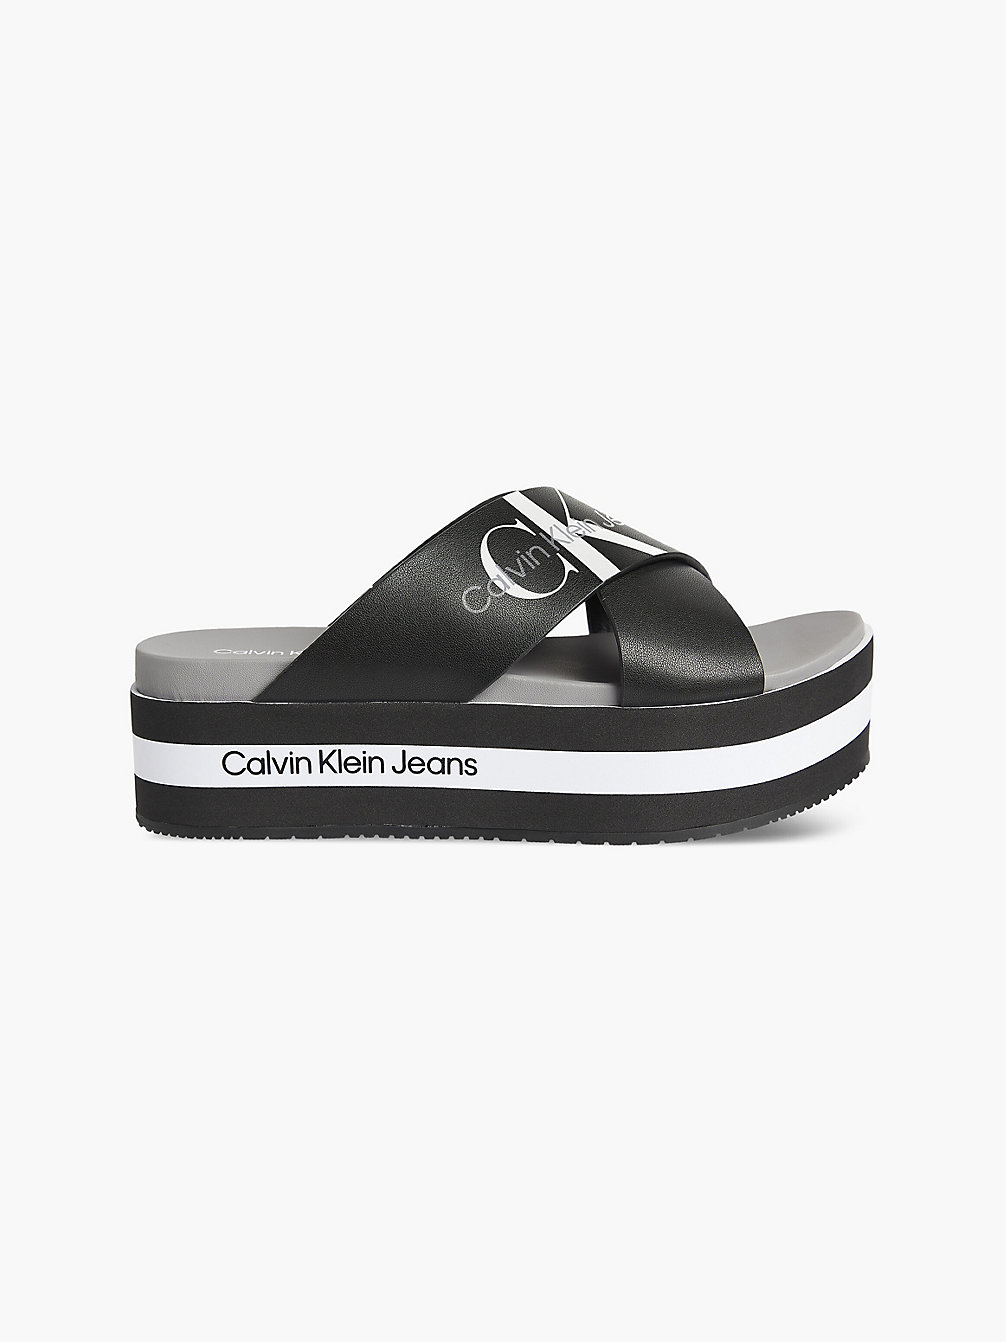 BLACK Leather Platform Sandals undefined women Calvin Klein